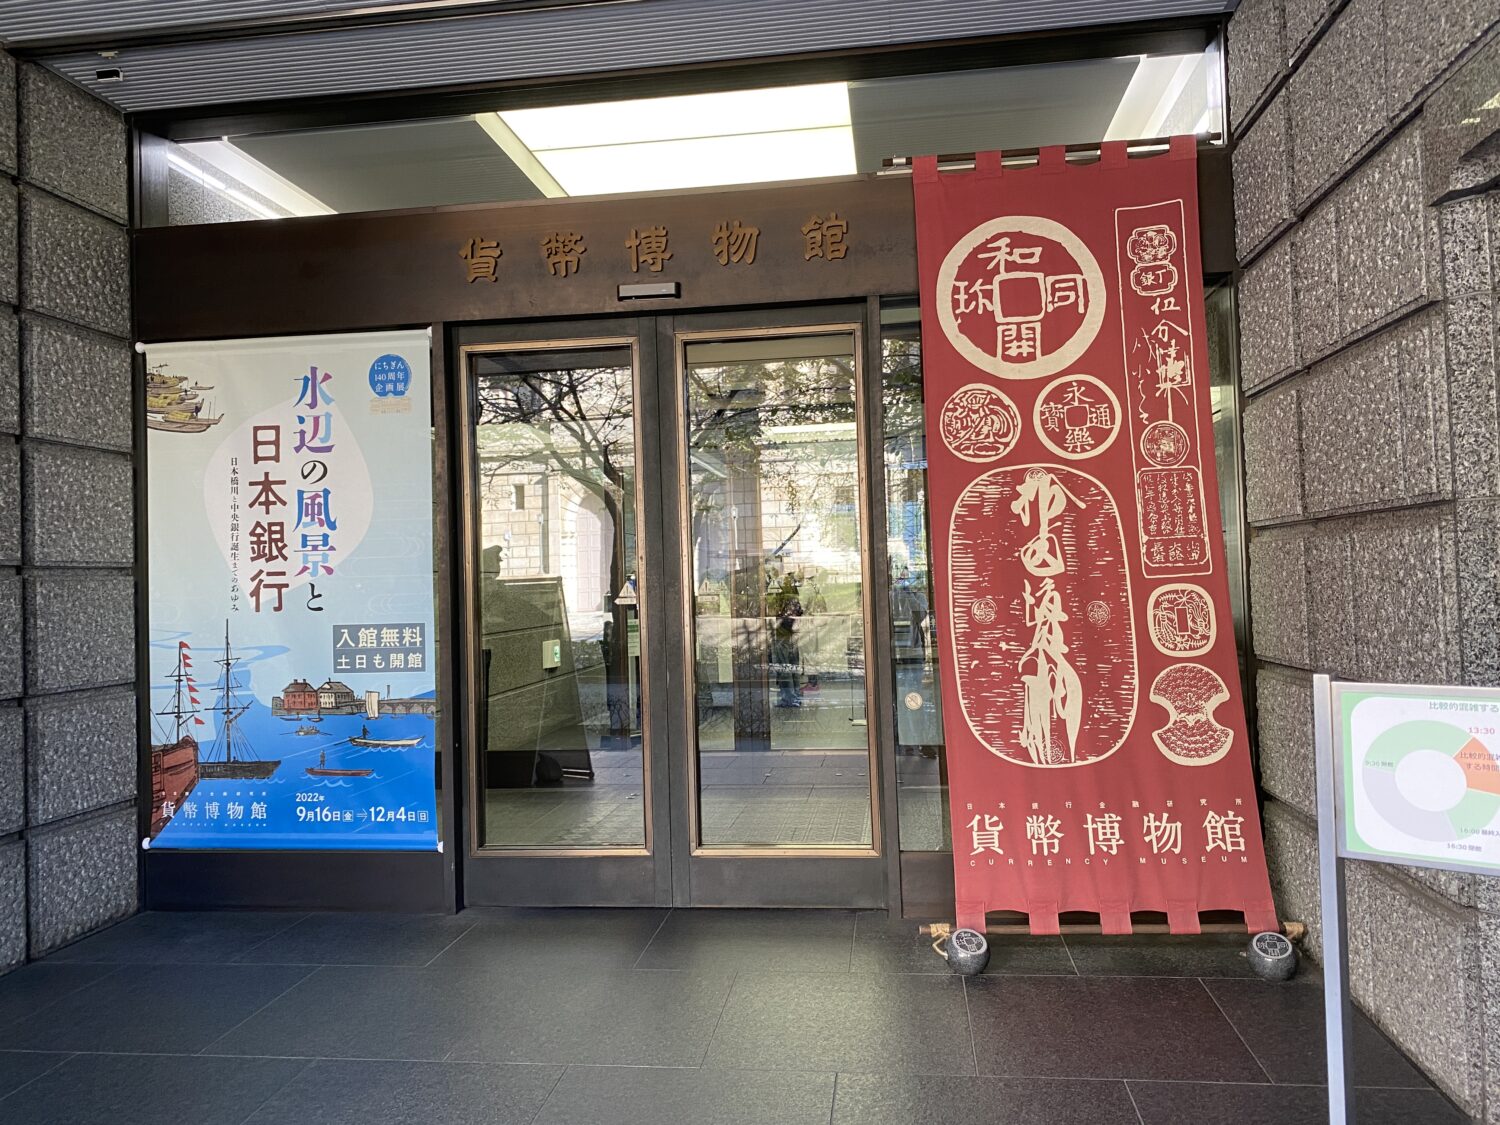 日本橋にある貨幣博物館の入り口の写真